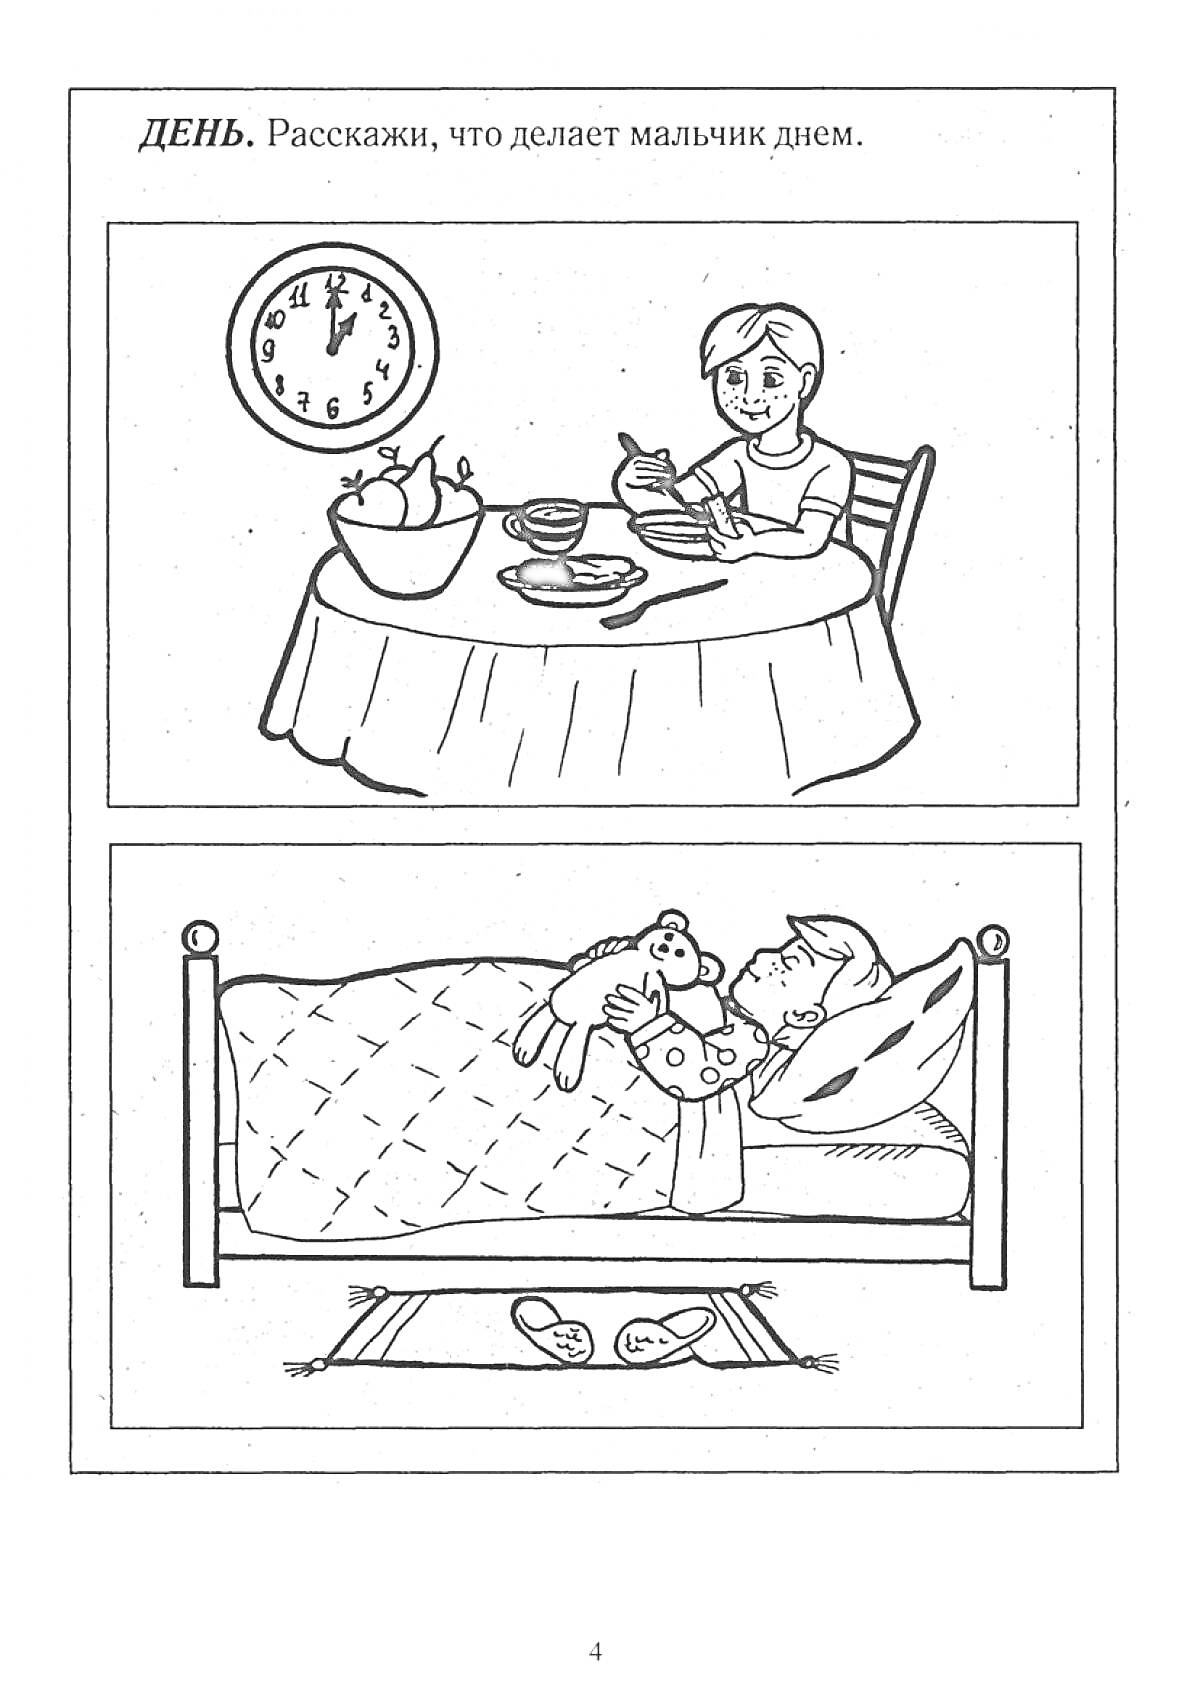 Мальчик за столом с едой и спящий мальчик в кровати с будильником